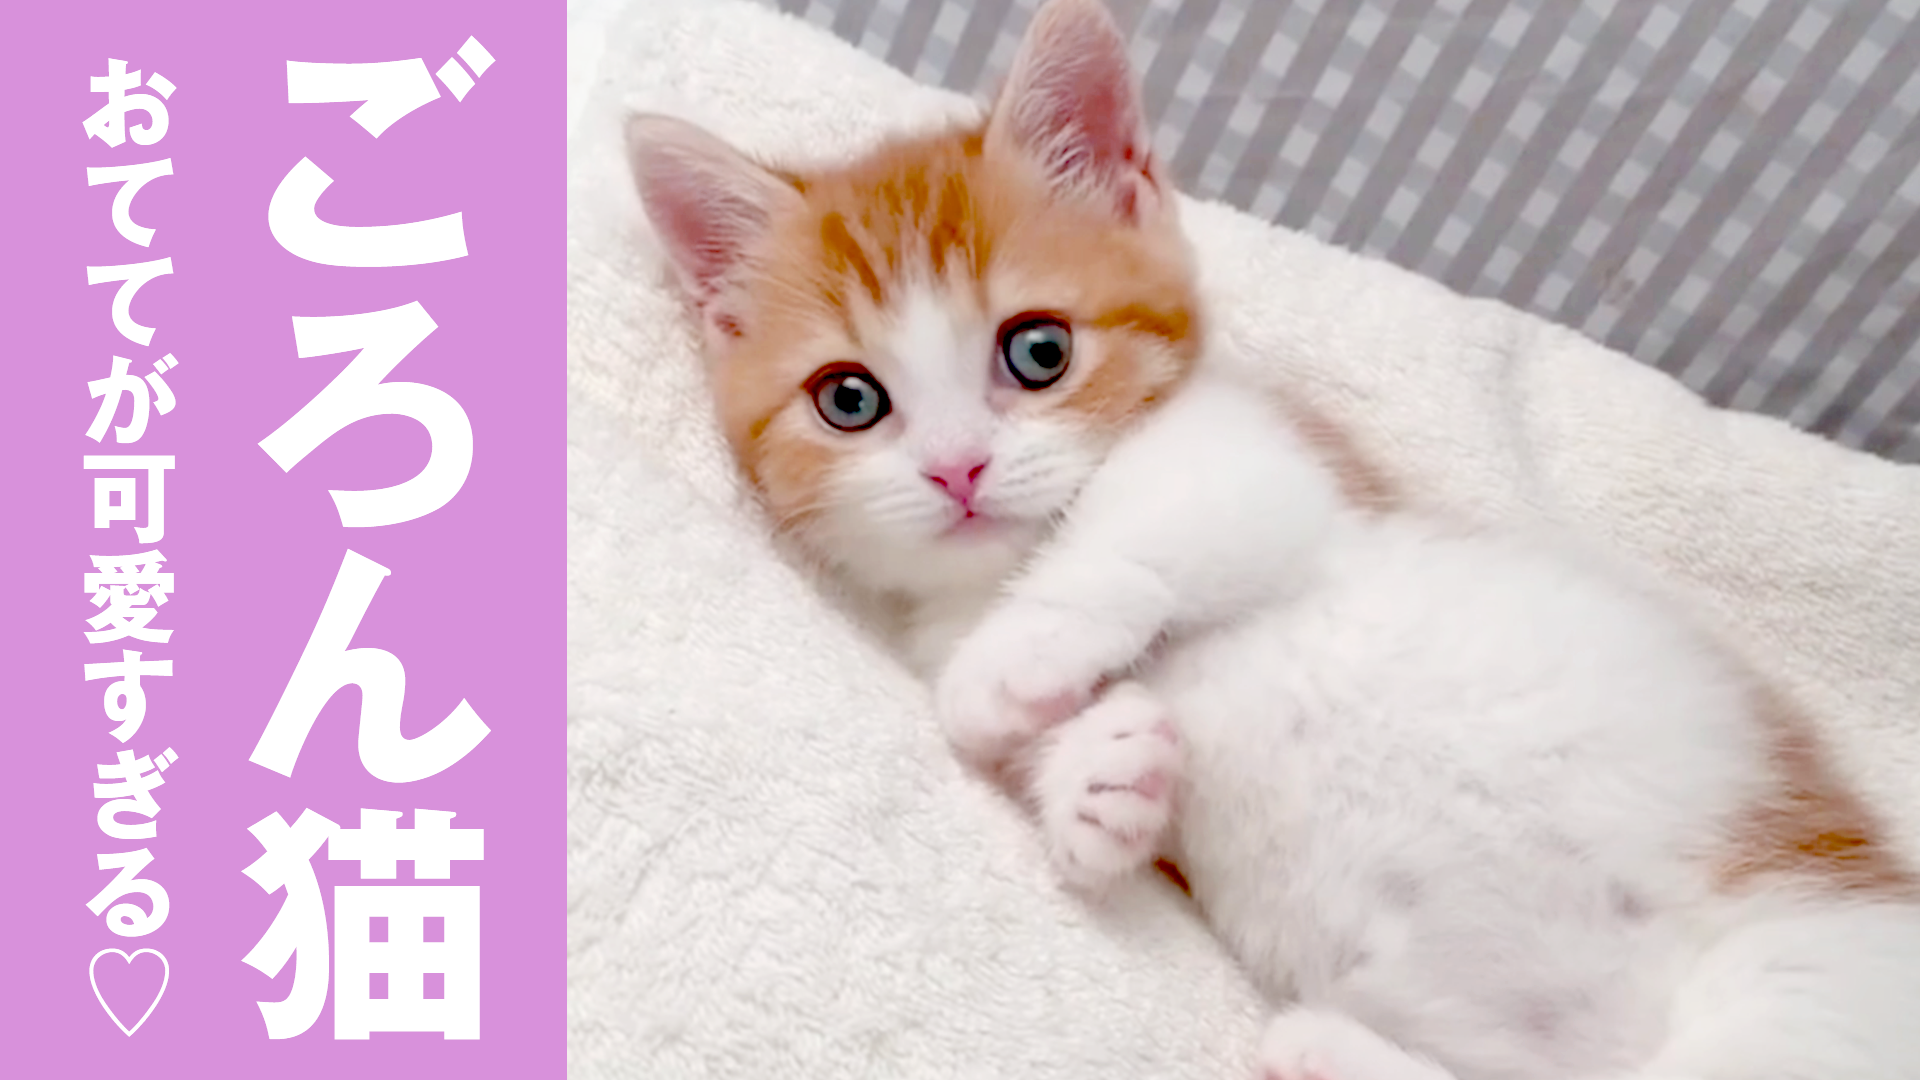 おててが可愛い♡仰向けごろんする子猫 - ねこちゃんホンポ TV | Yahoo